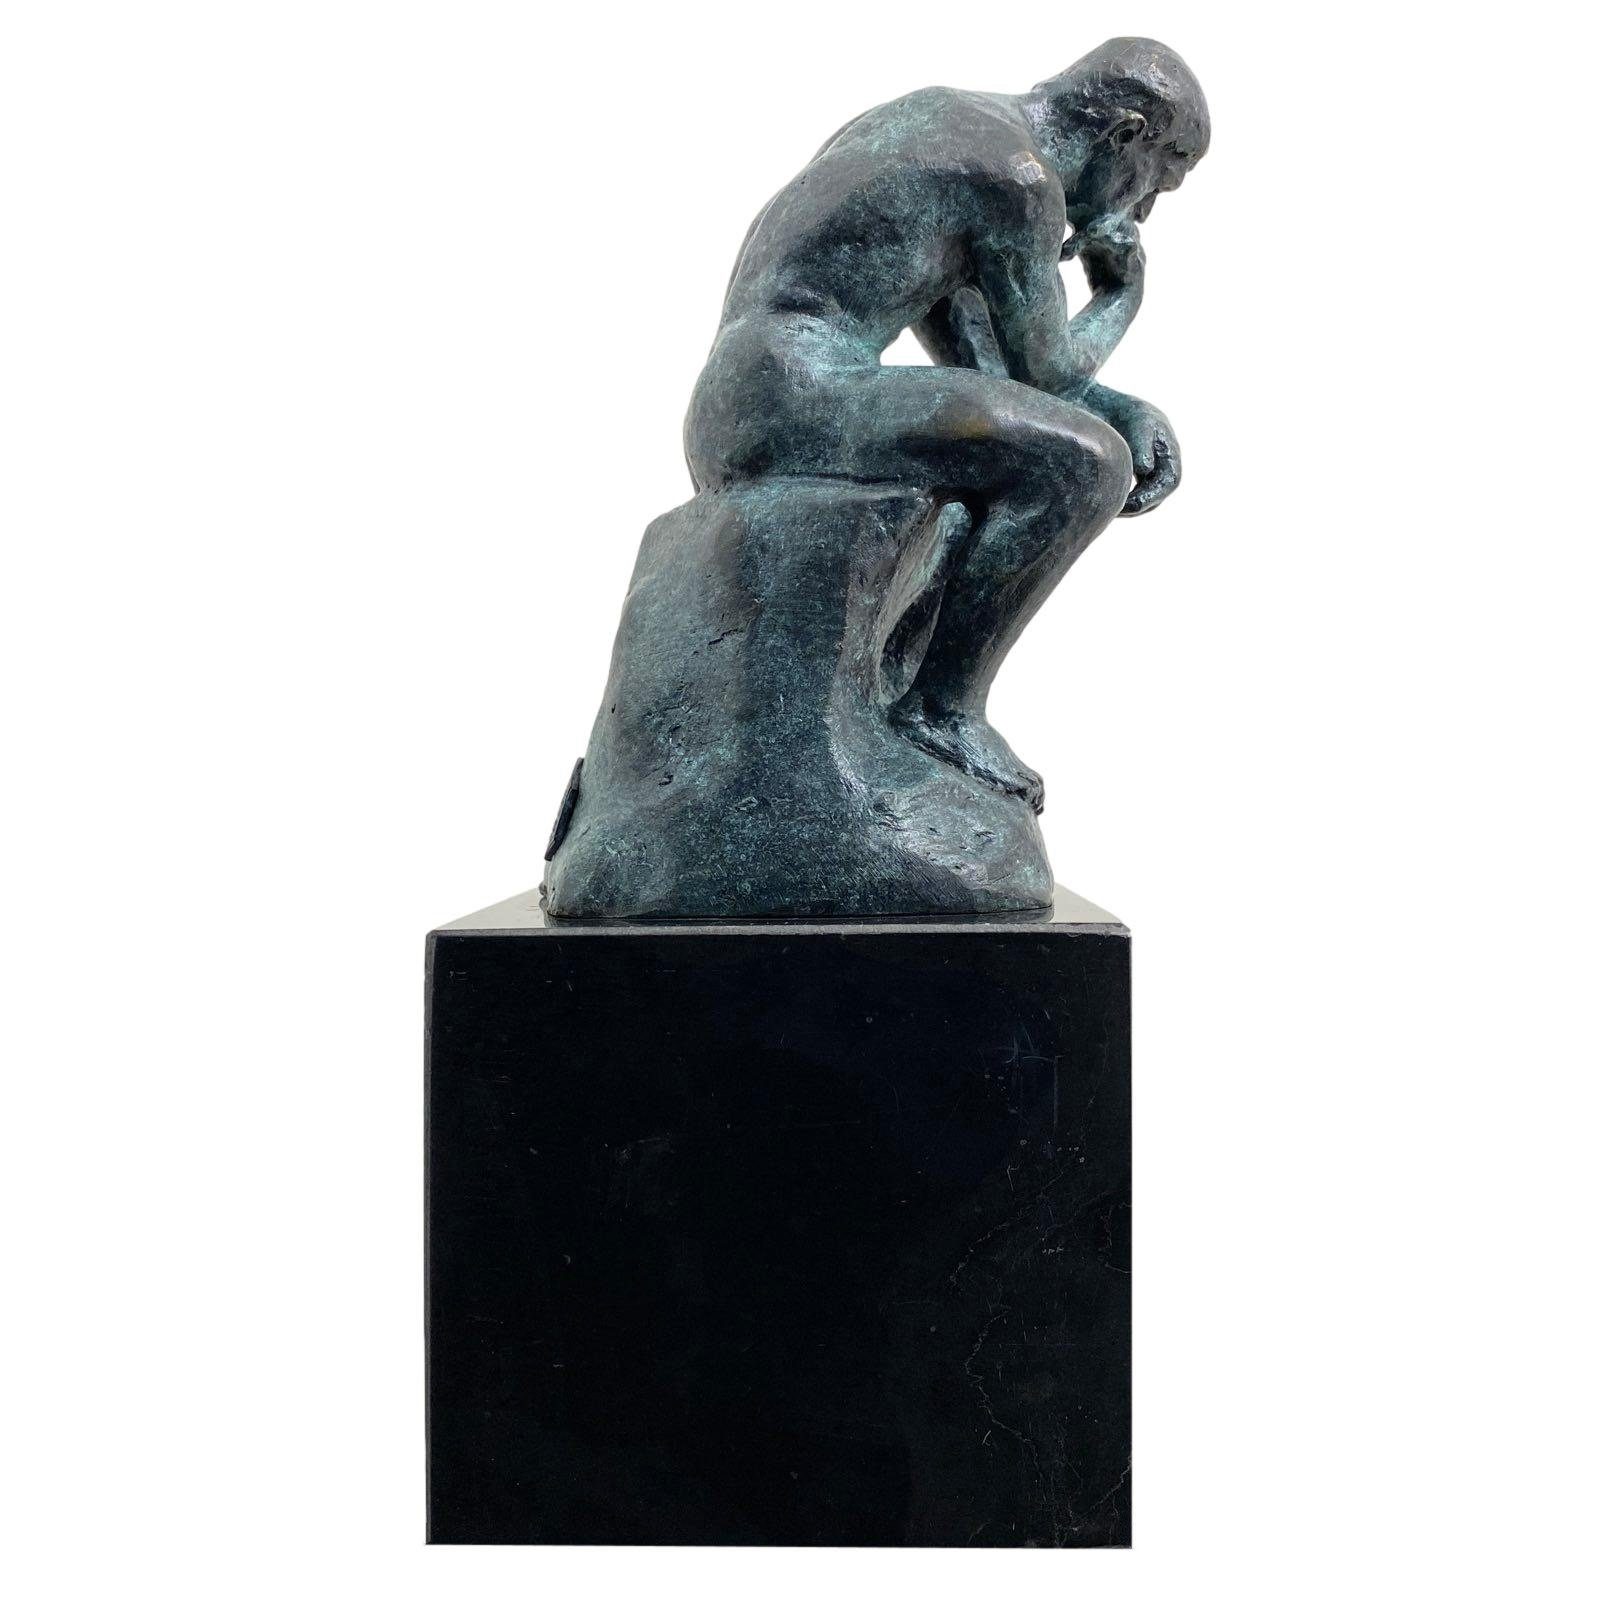 Aubaho Skulptur Bronze der Denker Mann Bronzeskulptur Bronzefigur nach Rodin coloriert